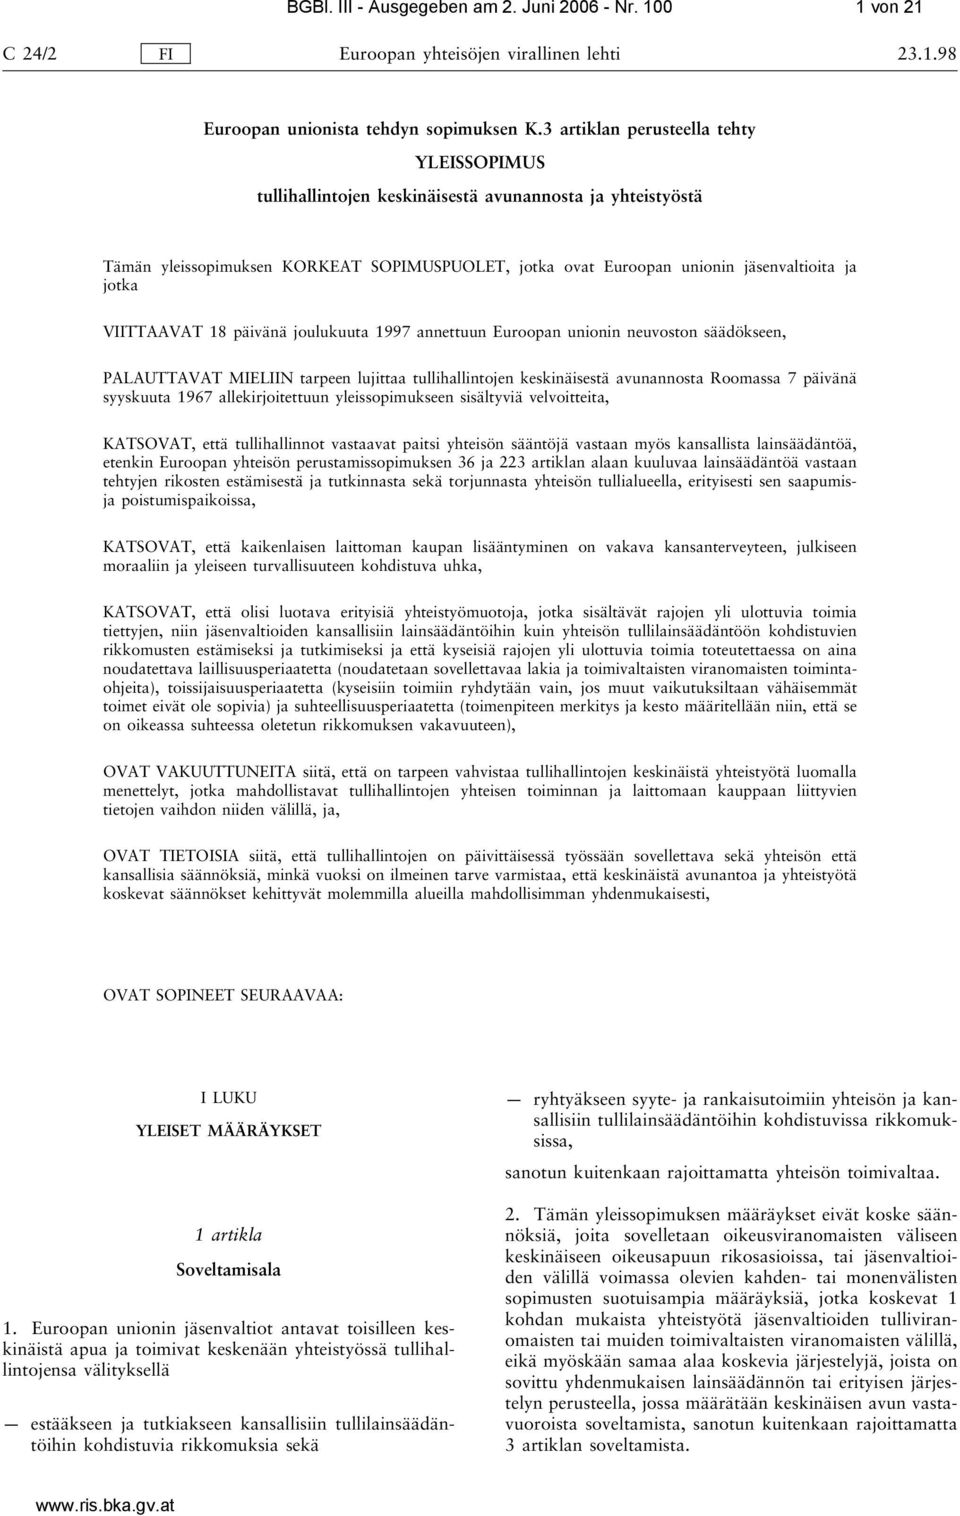 VIITTAAVAT 18 päivänä joulukuuta 1997 annettuun Euroopan unionin neuvoston säädökseen, PALAUTTAVAT MIELIIN tarpeen lujittaa tullihallintojen keskinäisestä avunannosta Roomassa 7 päivänä syyskuuta